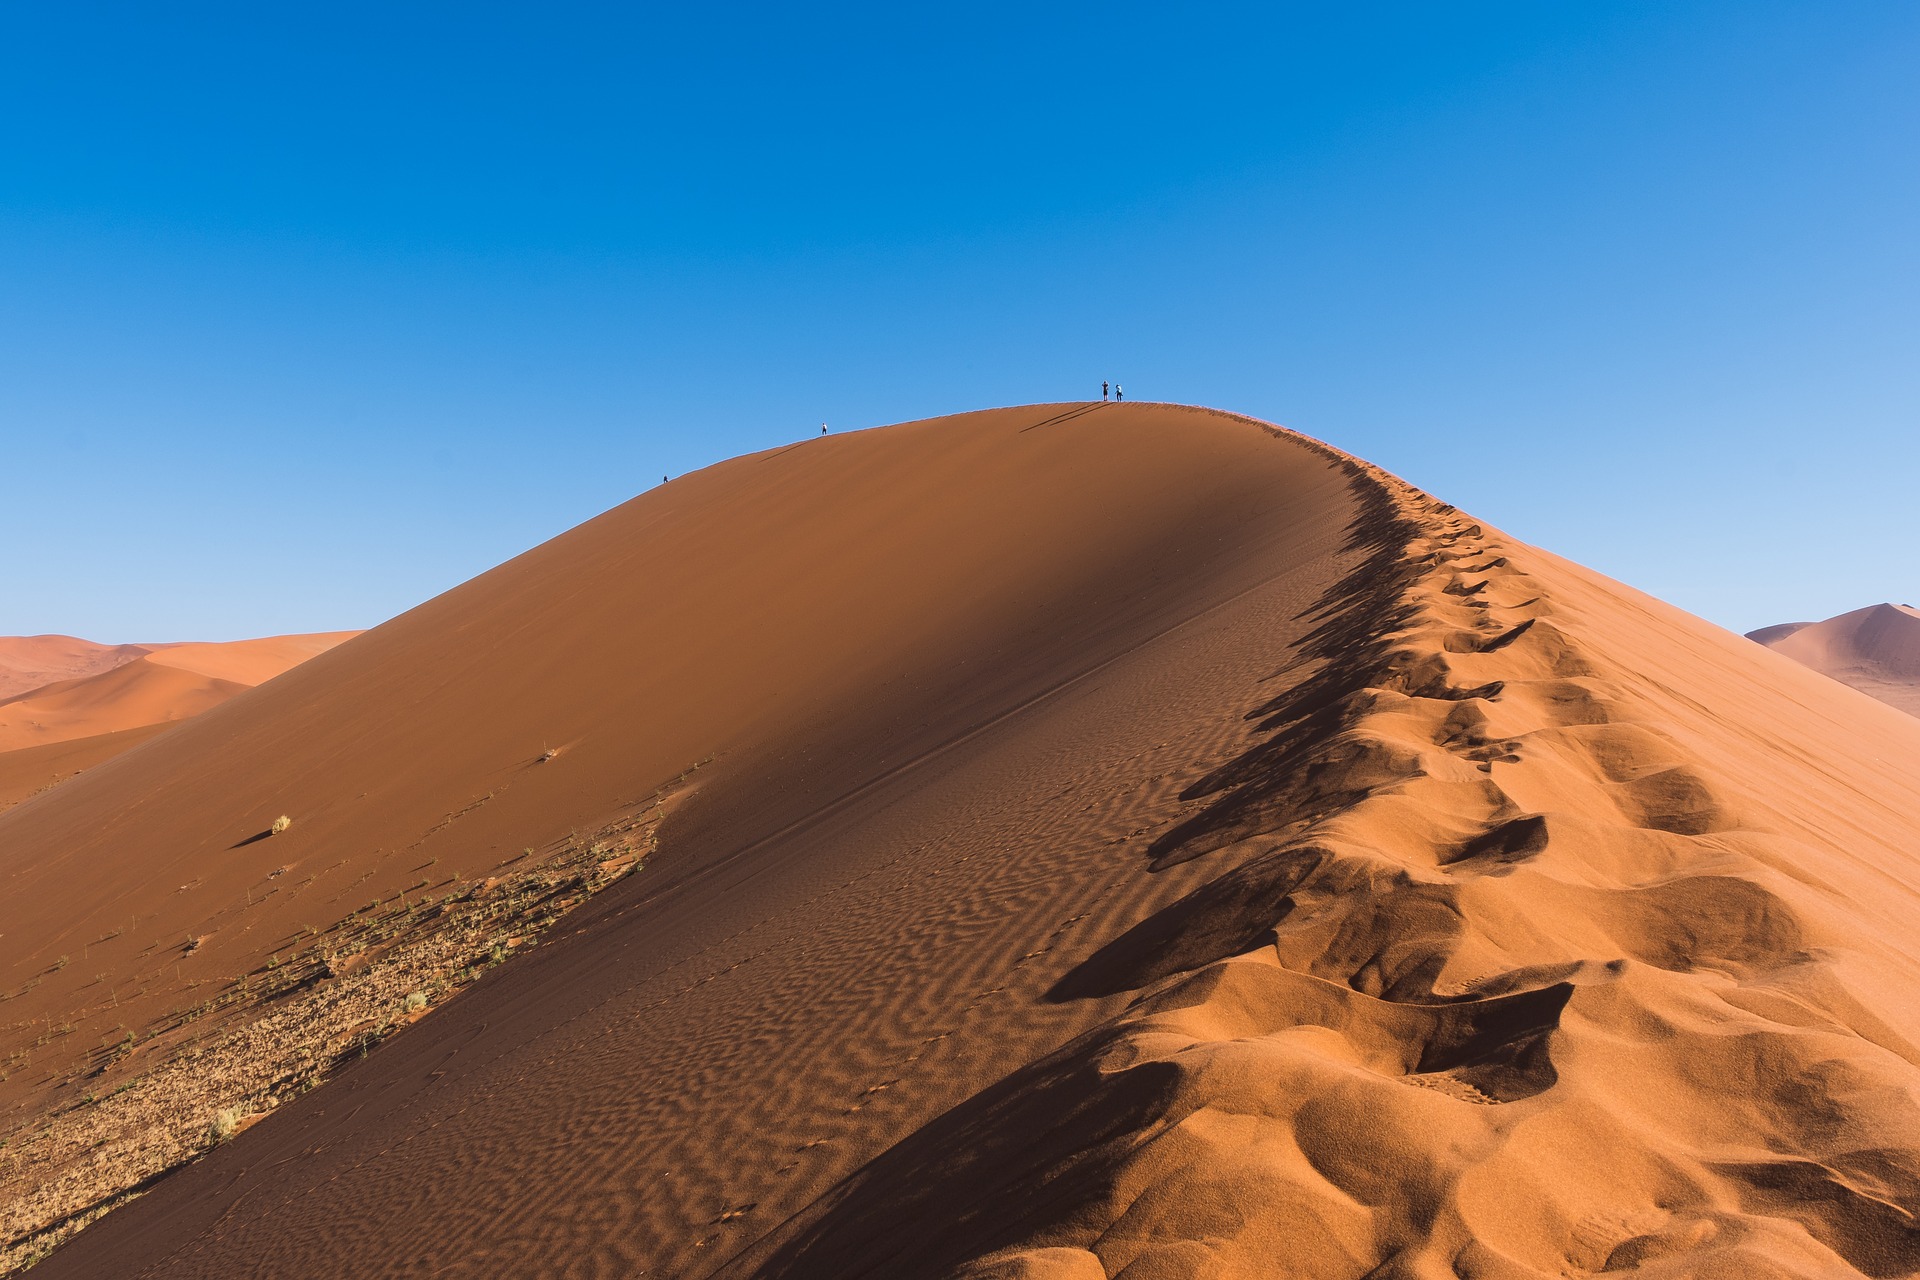 L'air chaud en provenance d'Afrique du Nord qui pénètre en Europe peut réchauffer la région. (Image: Jbauer-fotographie / Pixabay)